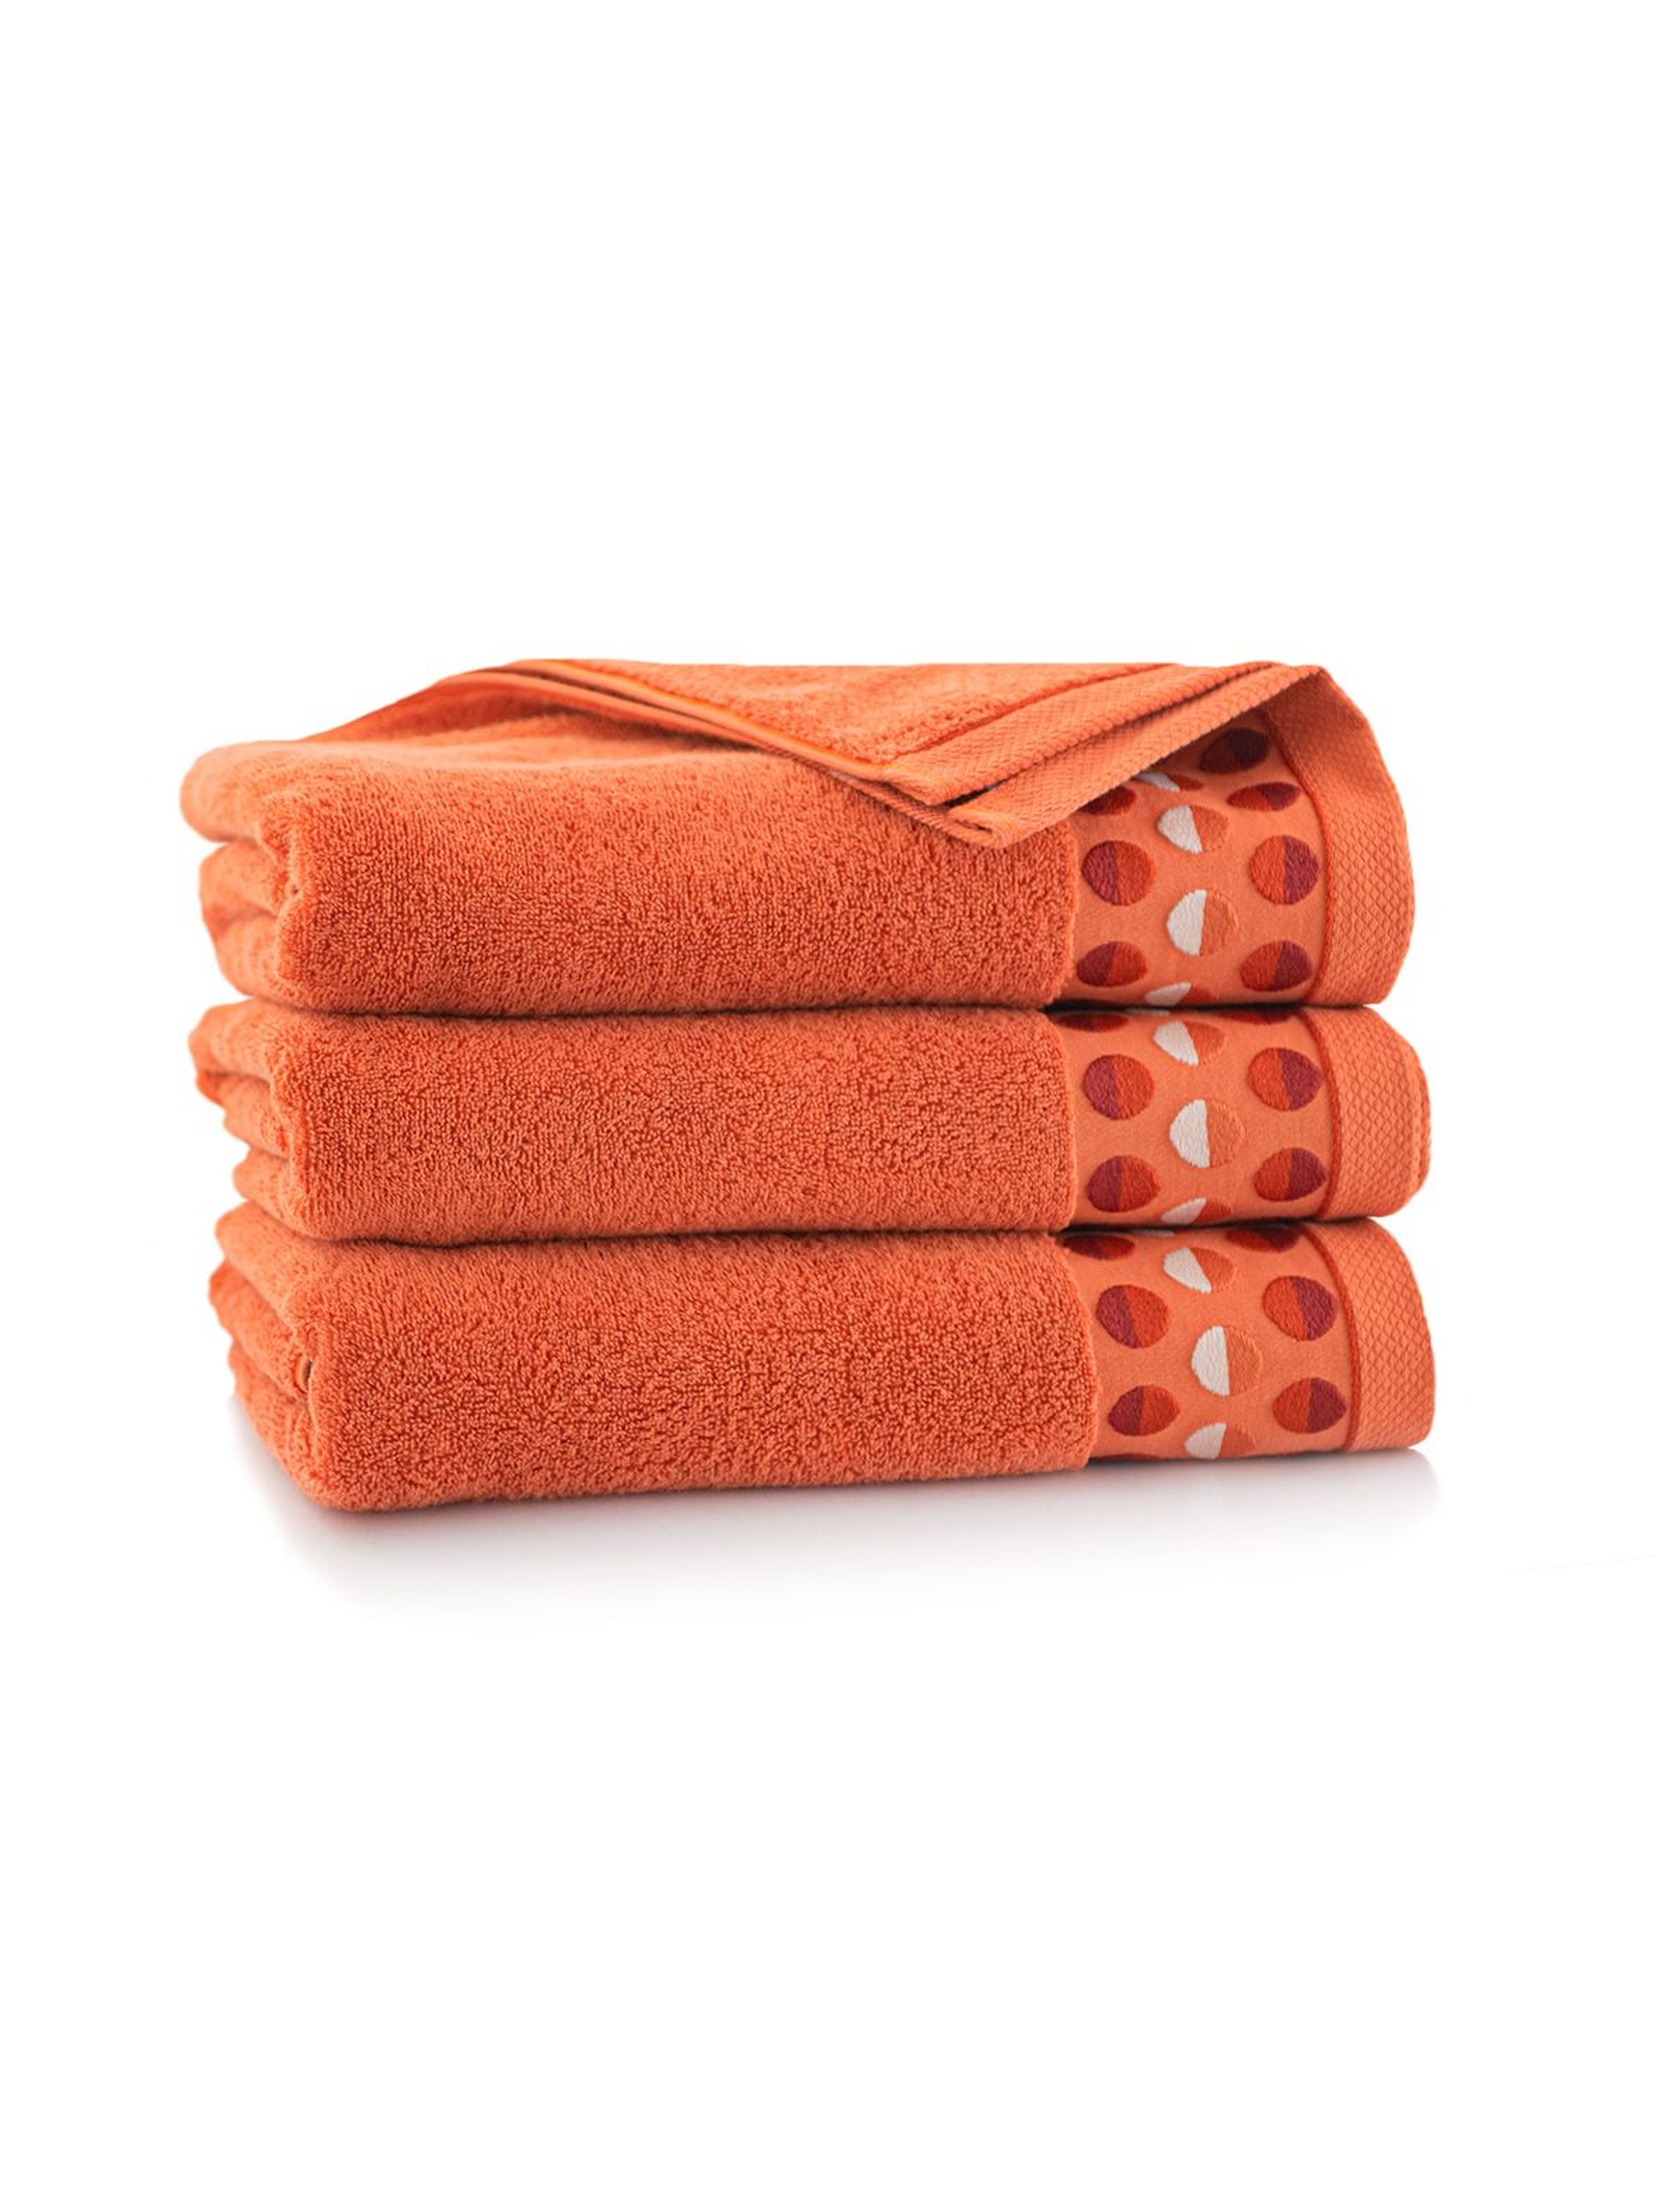 Ręcznik z bawełny egipskiej Zen - pomarańczowy 70x140cm